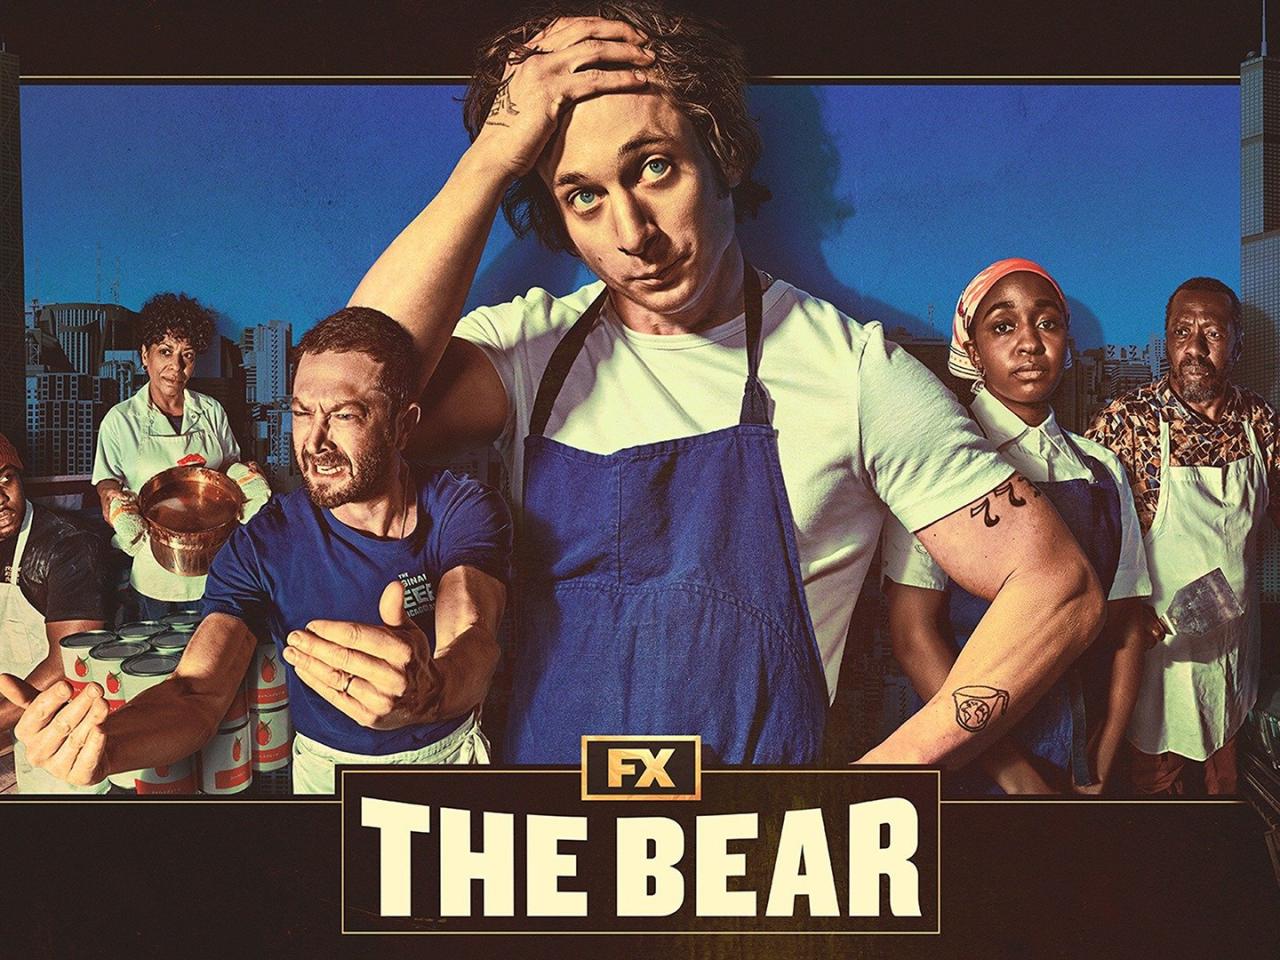 The bear season 3 episode 1